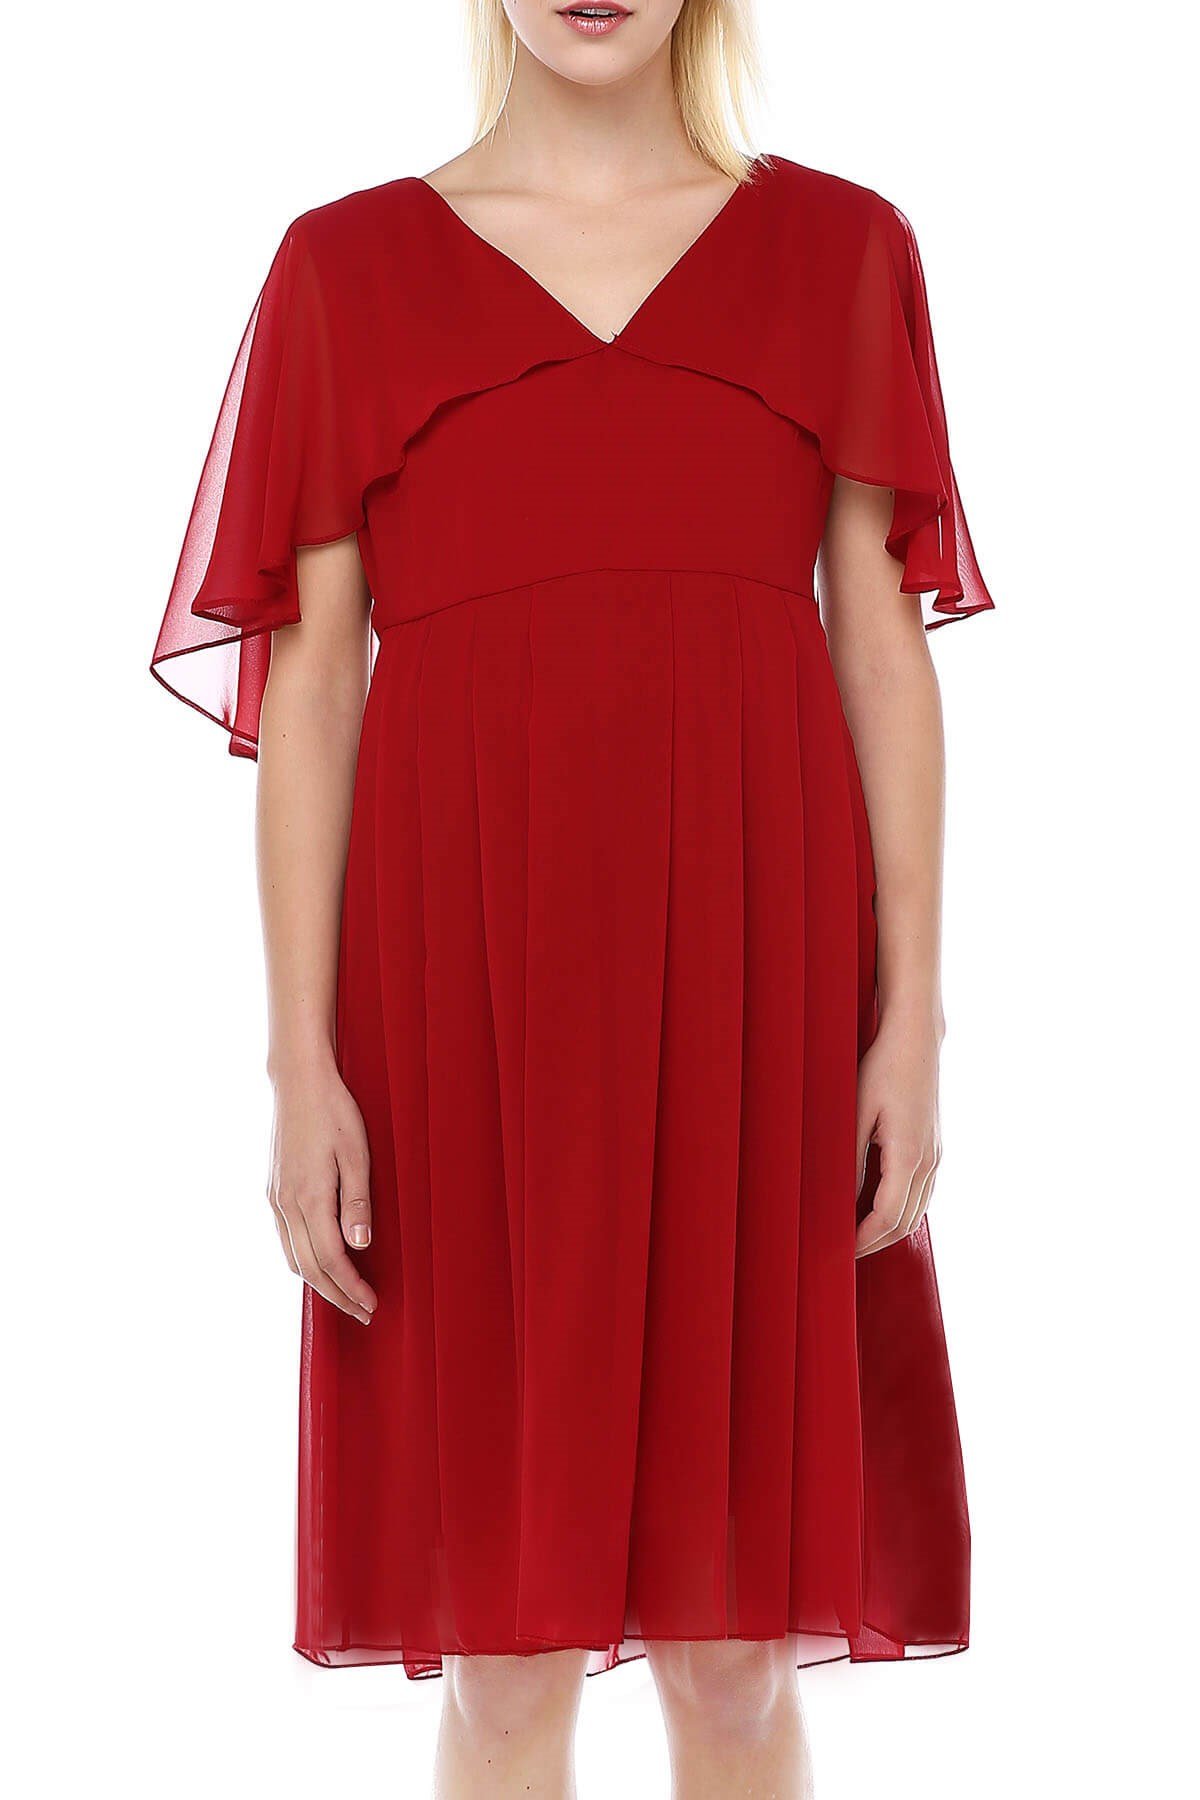 Moda Labio | Melek Kol Kısa Kırmızı Hamile Elbise